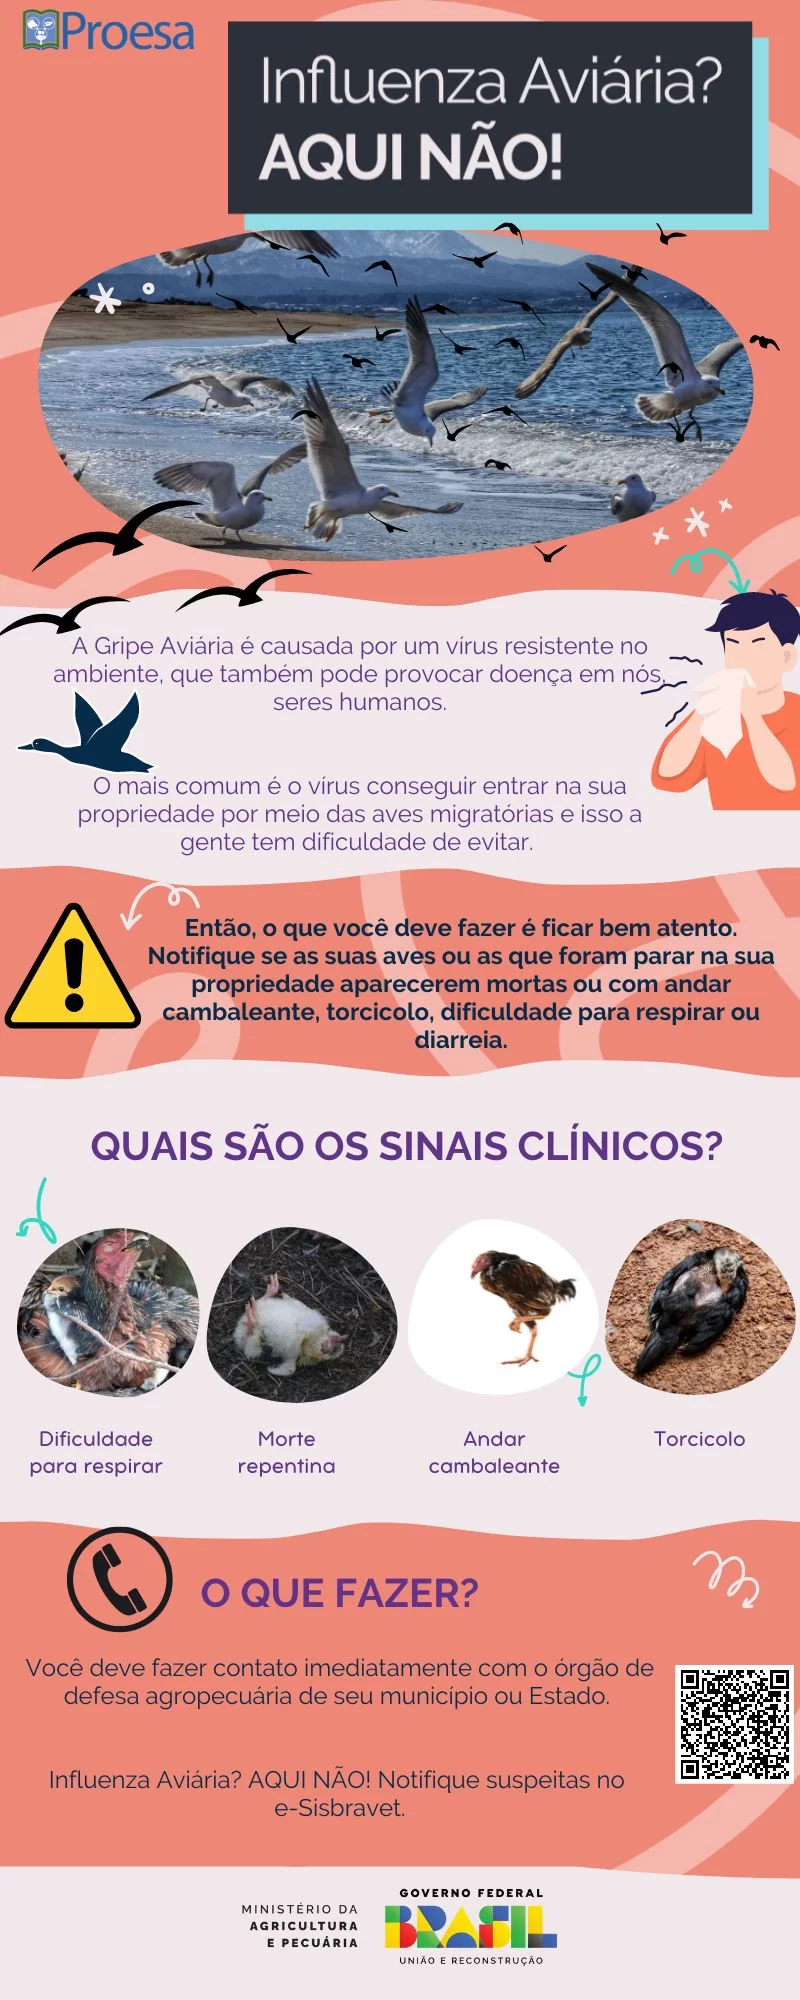 Infográfico explica como identificar gripe aviária e prevenções.